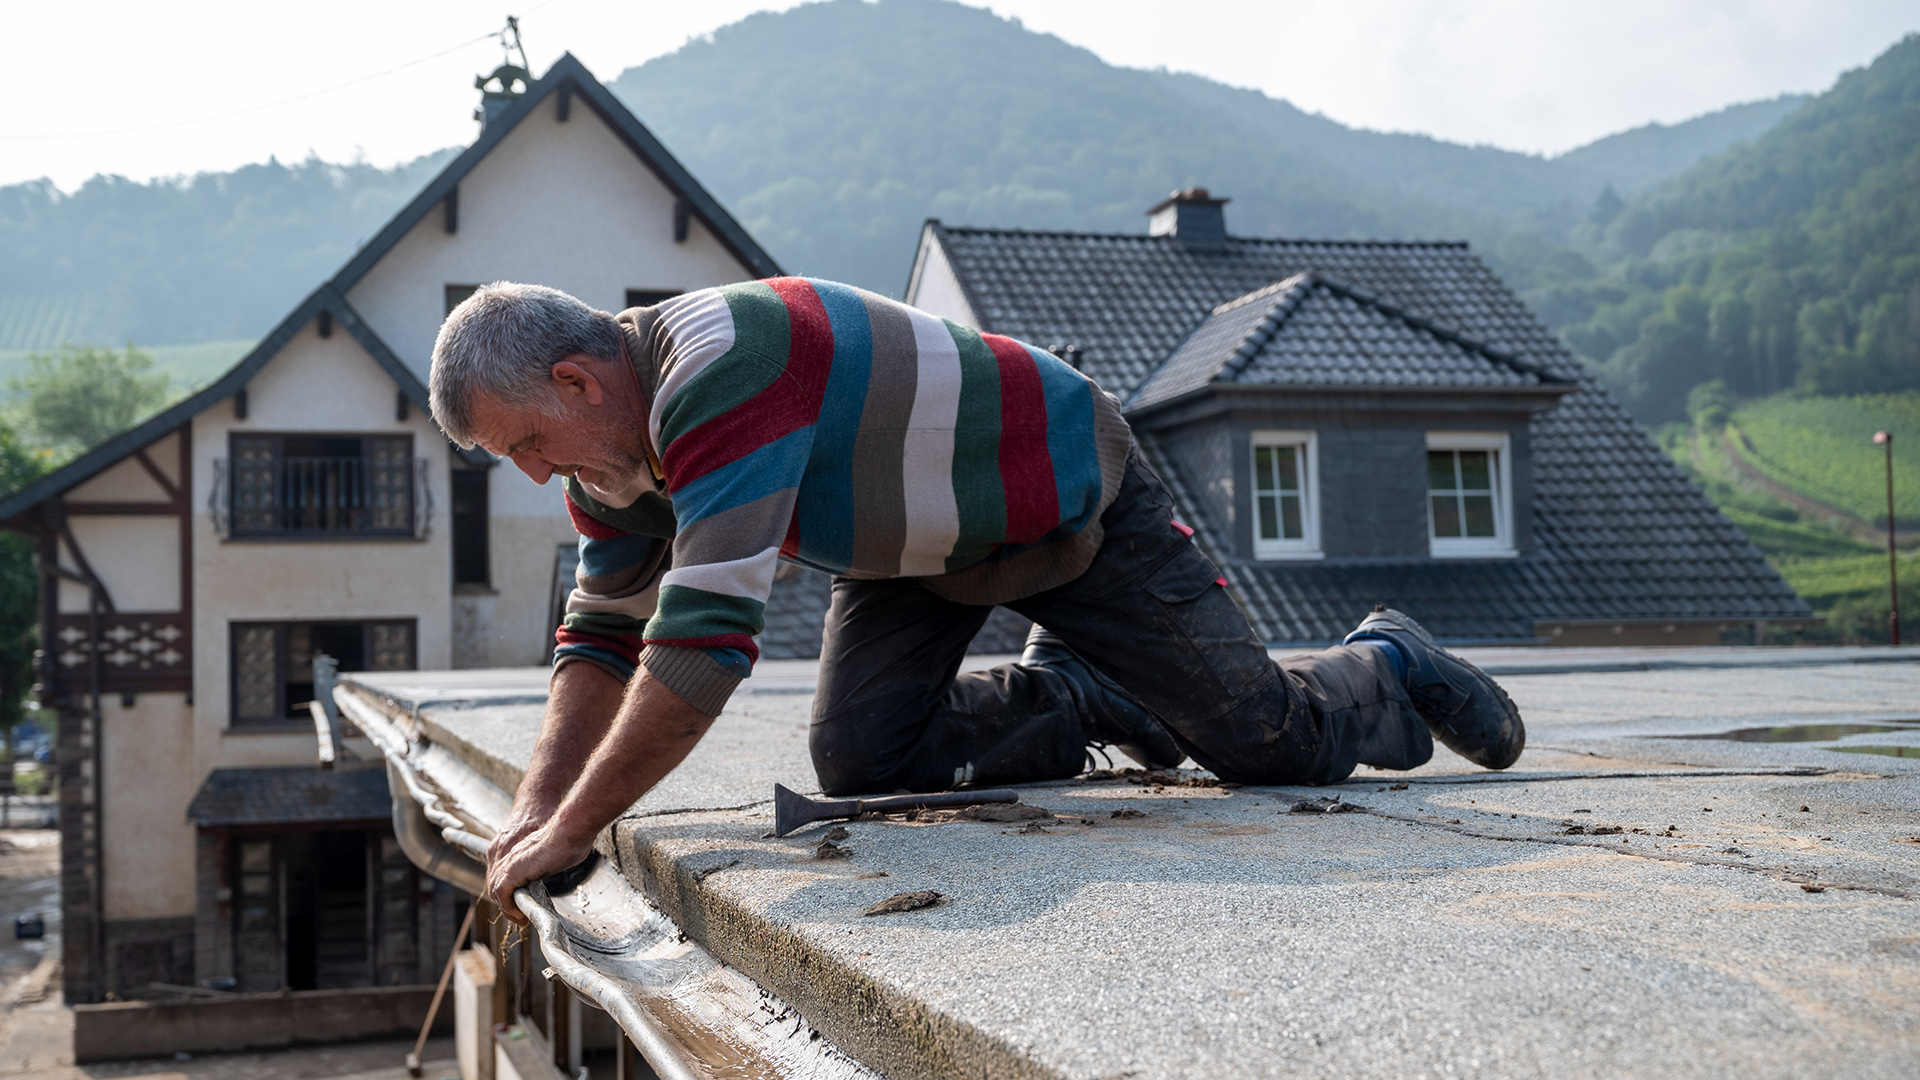 Dachdecker Udo Arndt aus dem Sauerland arbeitet an einem der Dächer, die von der Flutkatastrophe beschädigt worden sind. | dpa